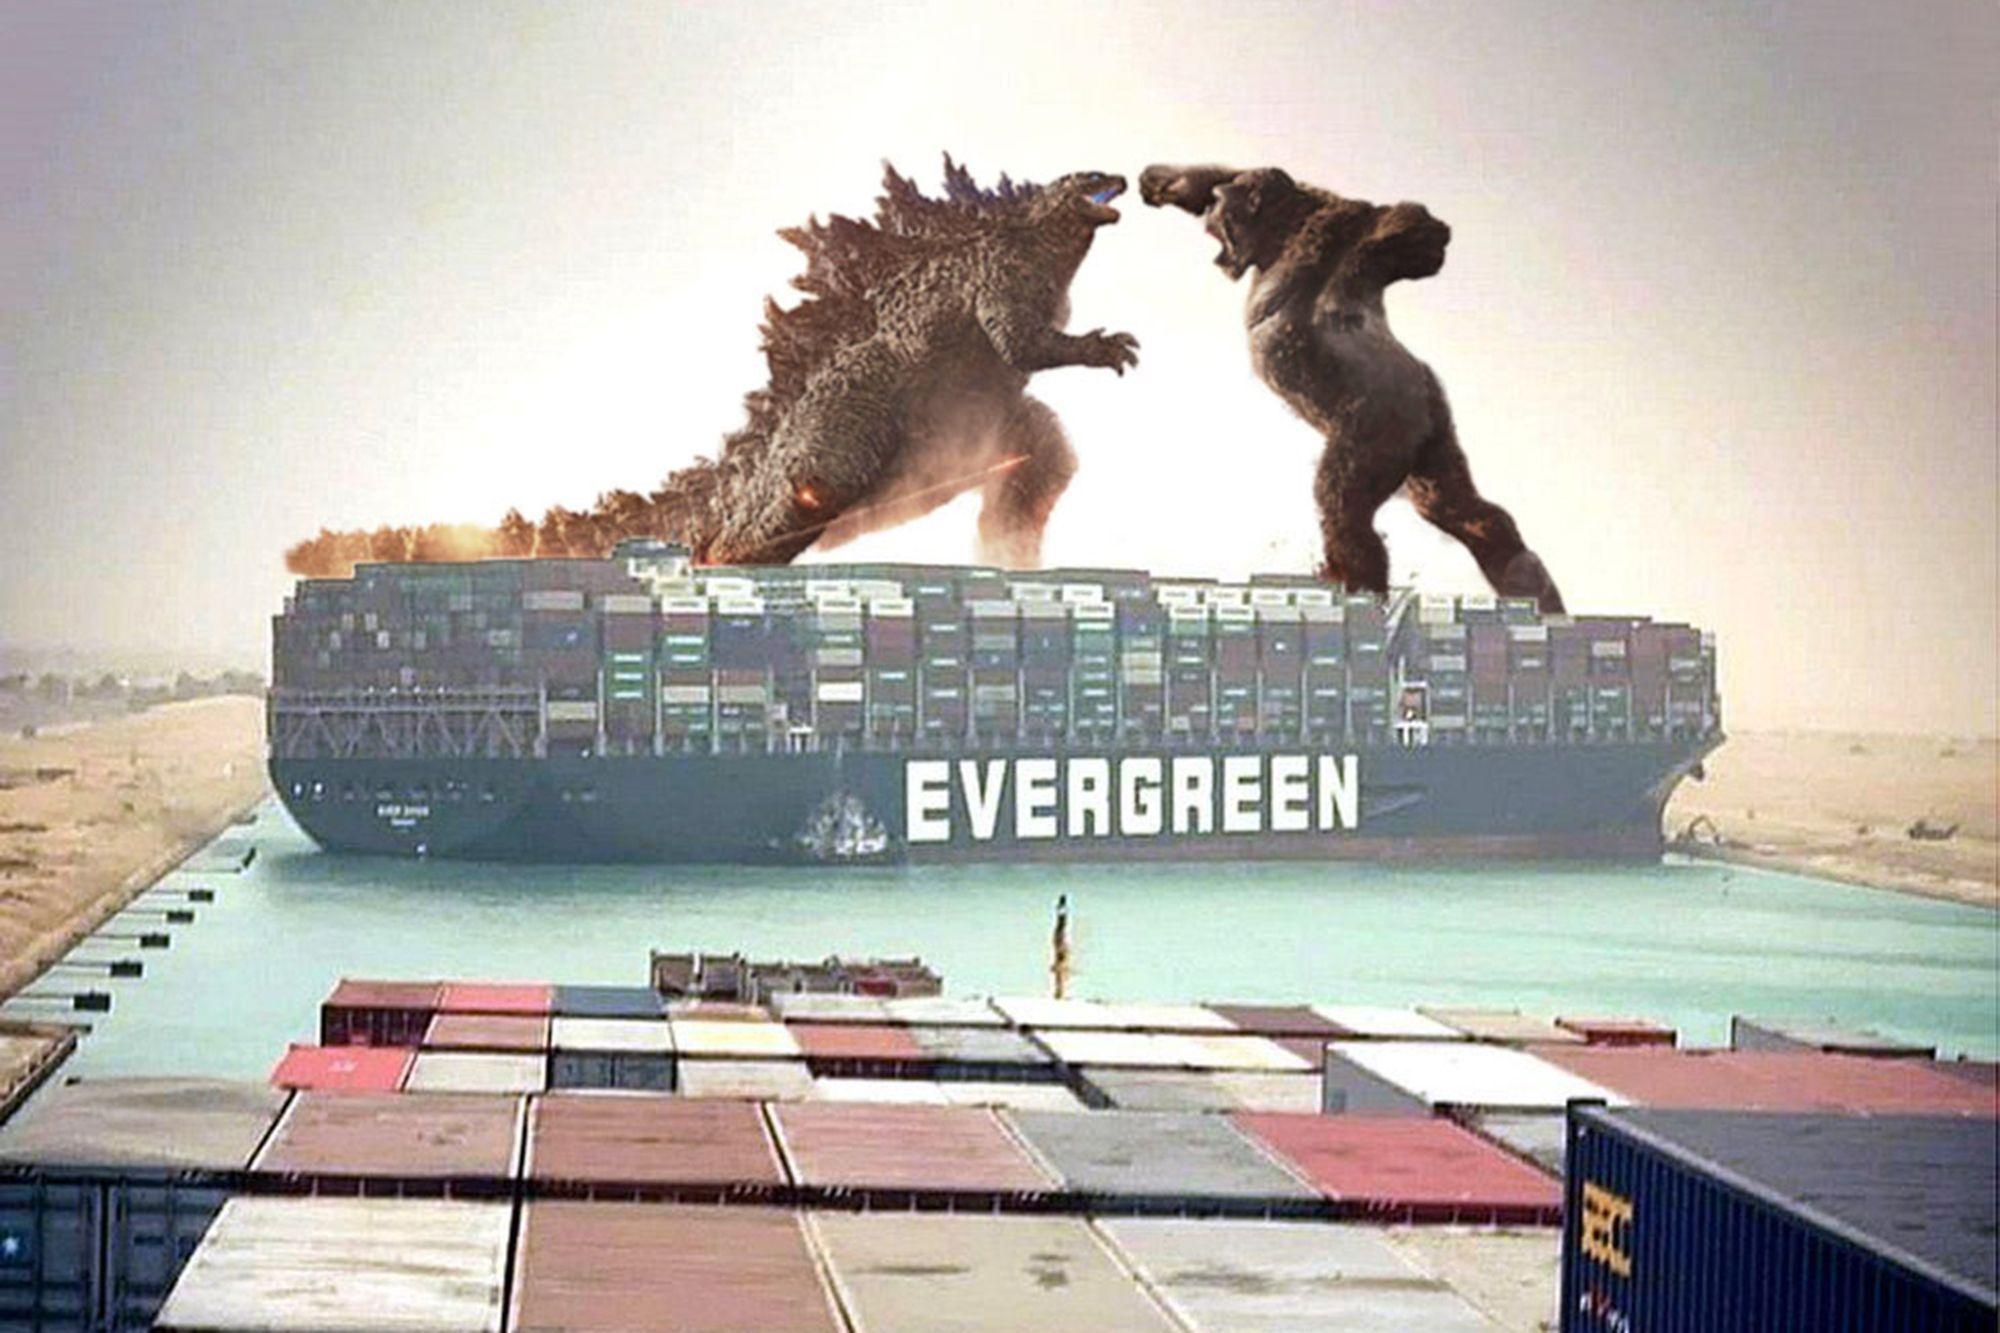 Después de una semana de memes, el Ever Given Ship es liberado y el canal de Suez está despejado